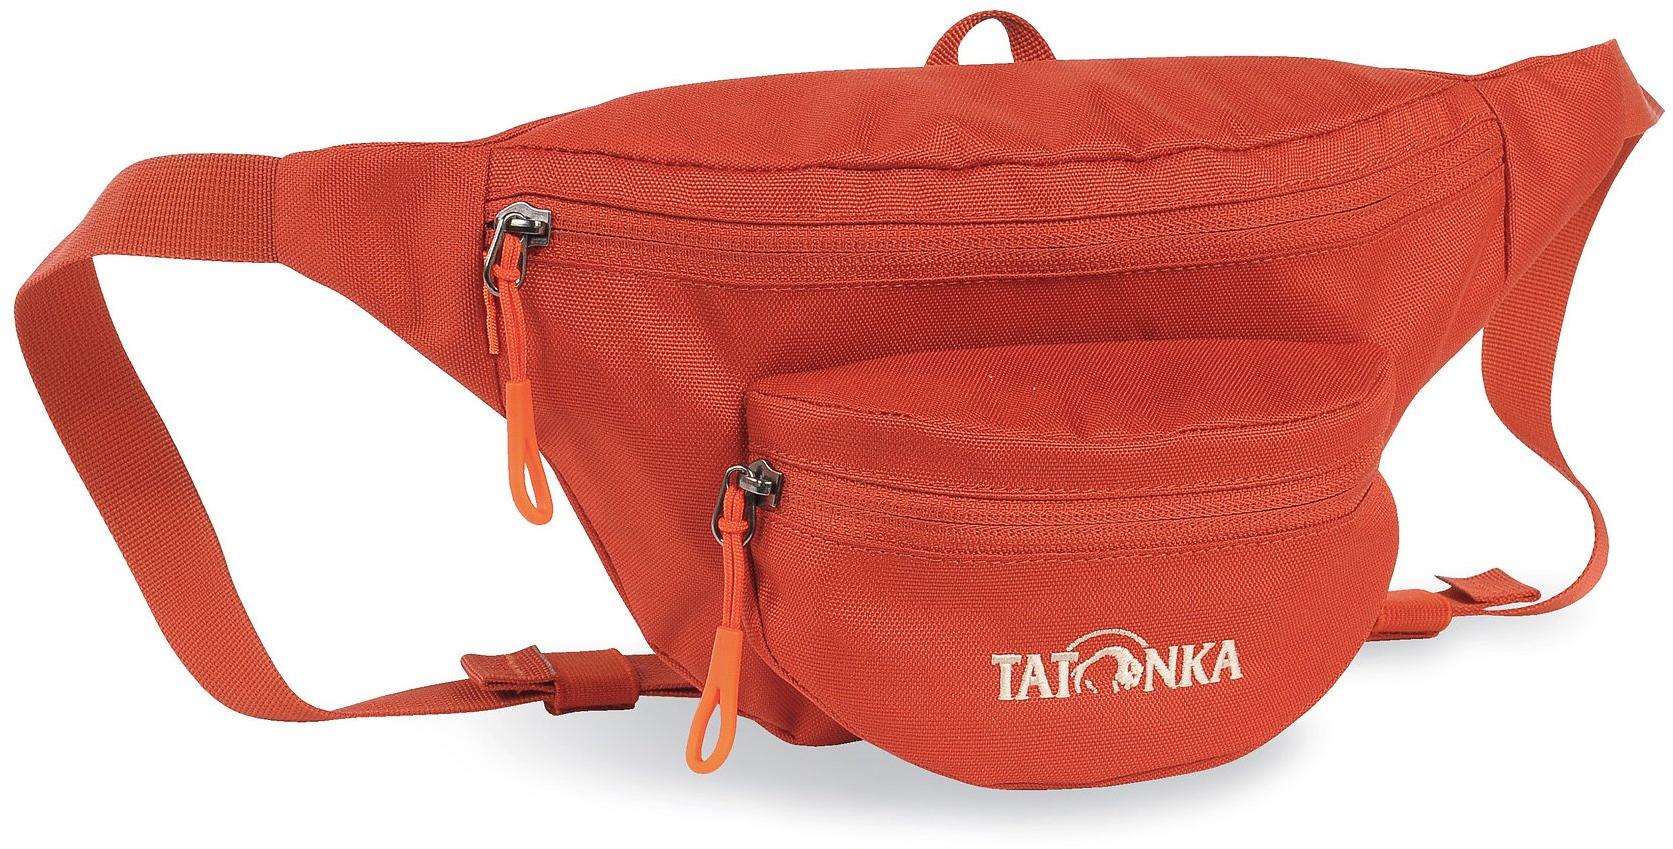 Tatonka Funny Bag